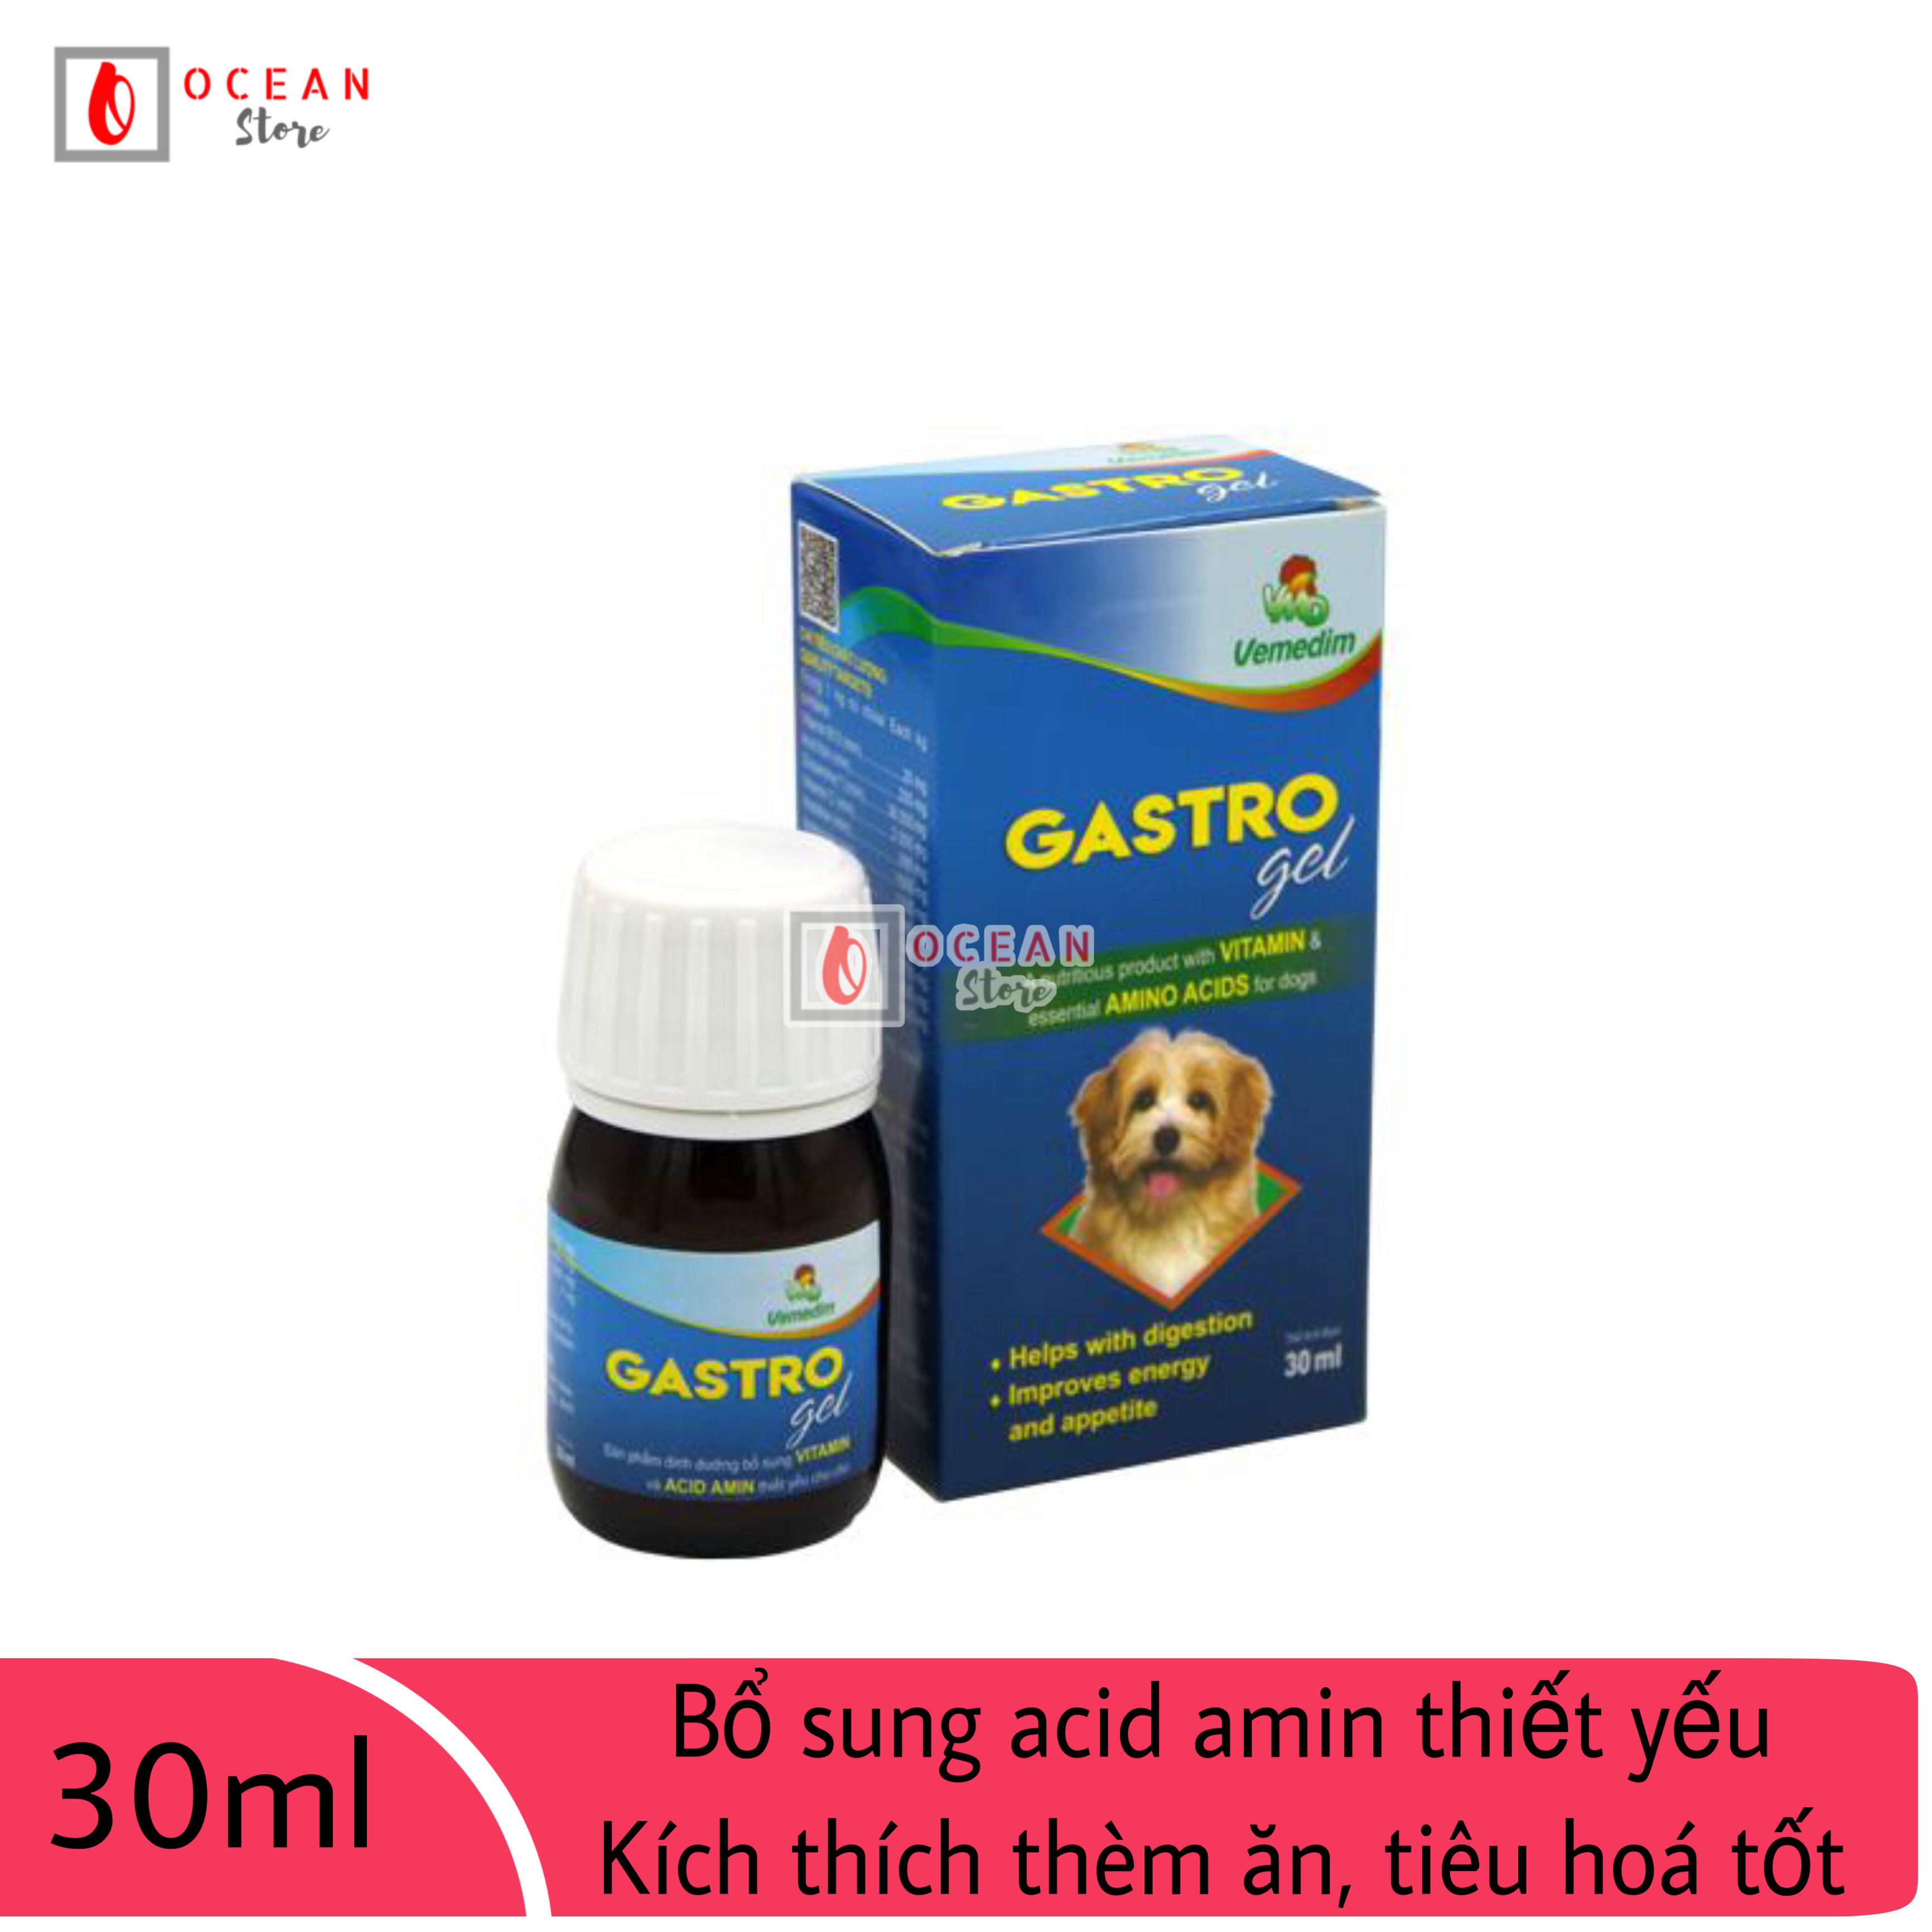 GASTRO GEL Bổ sung acid  thiết yếu kích thích thèm ăn giúp tiêu hóa tốt giảm stress cho chó (VMD)- chai 30ml